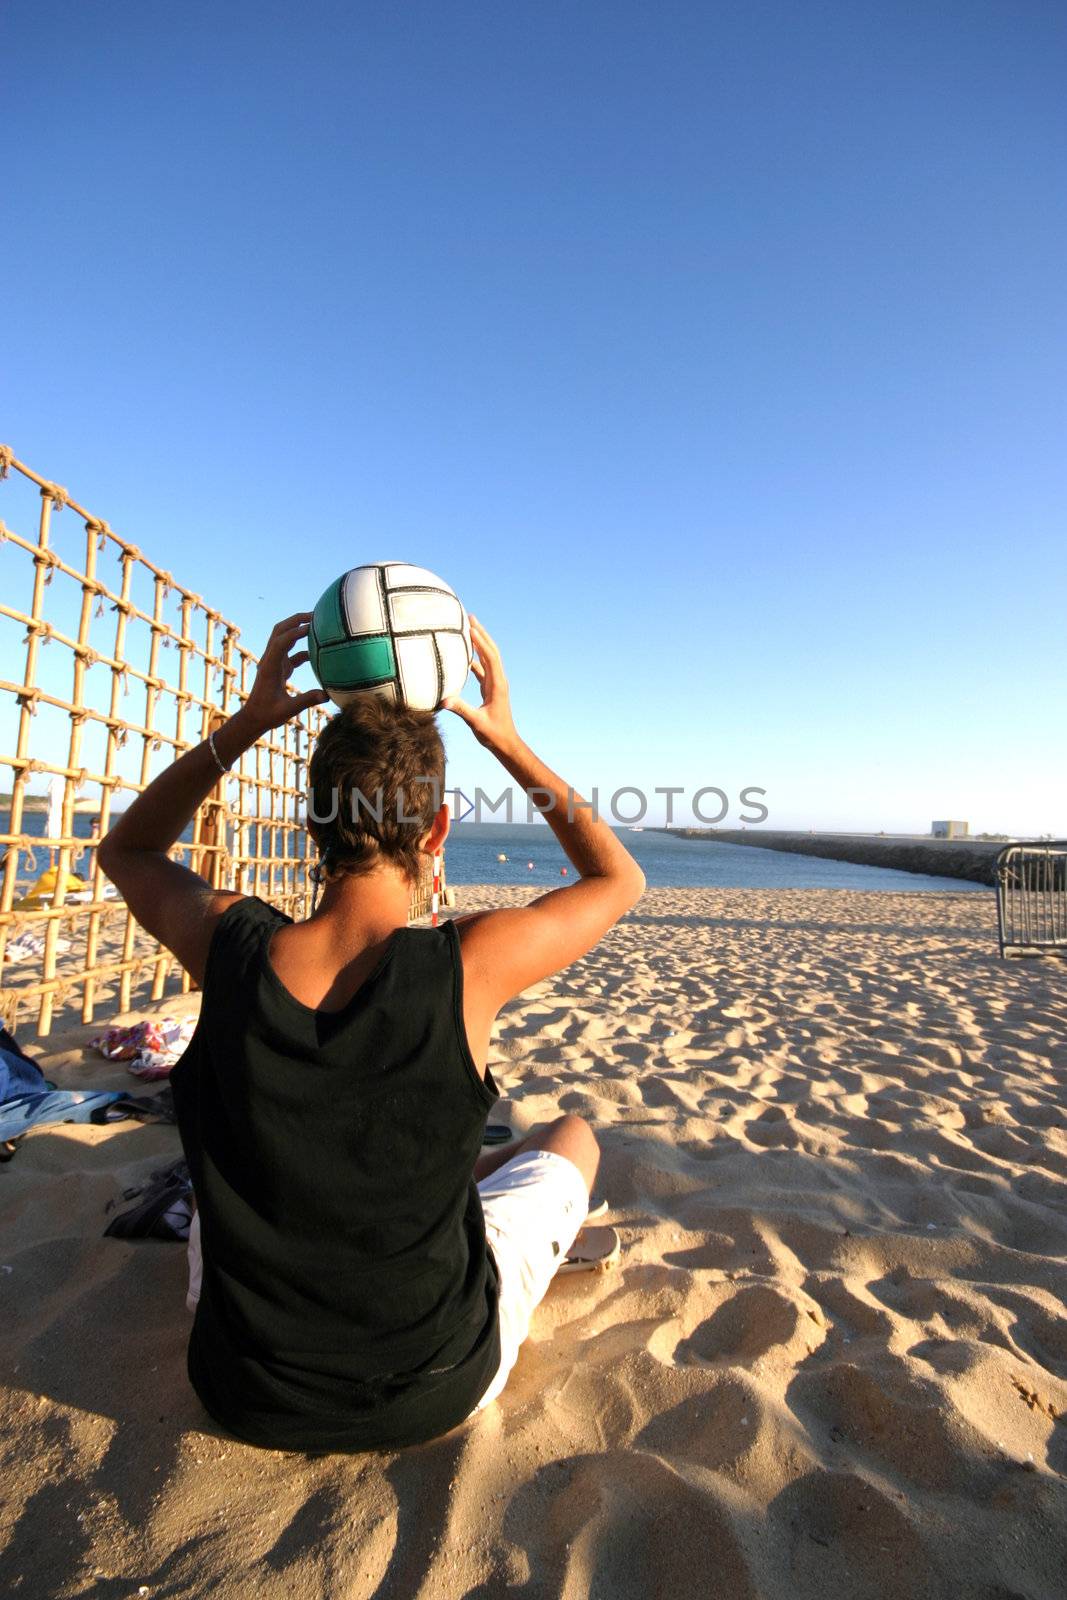 beach soccer player in the beach